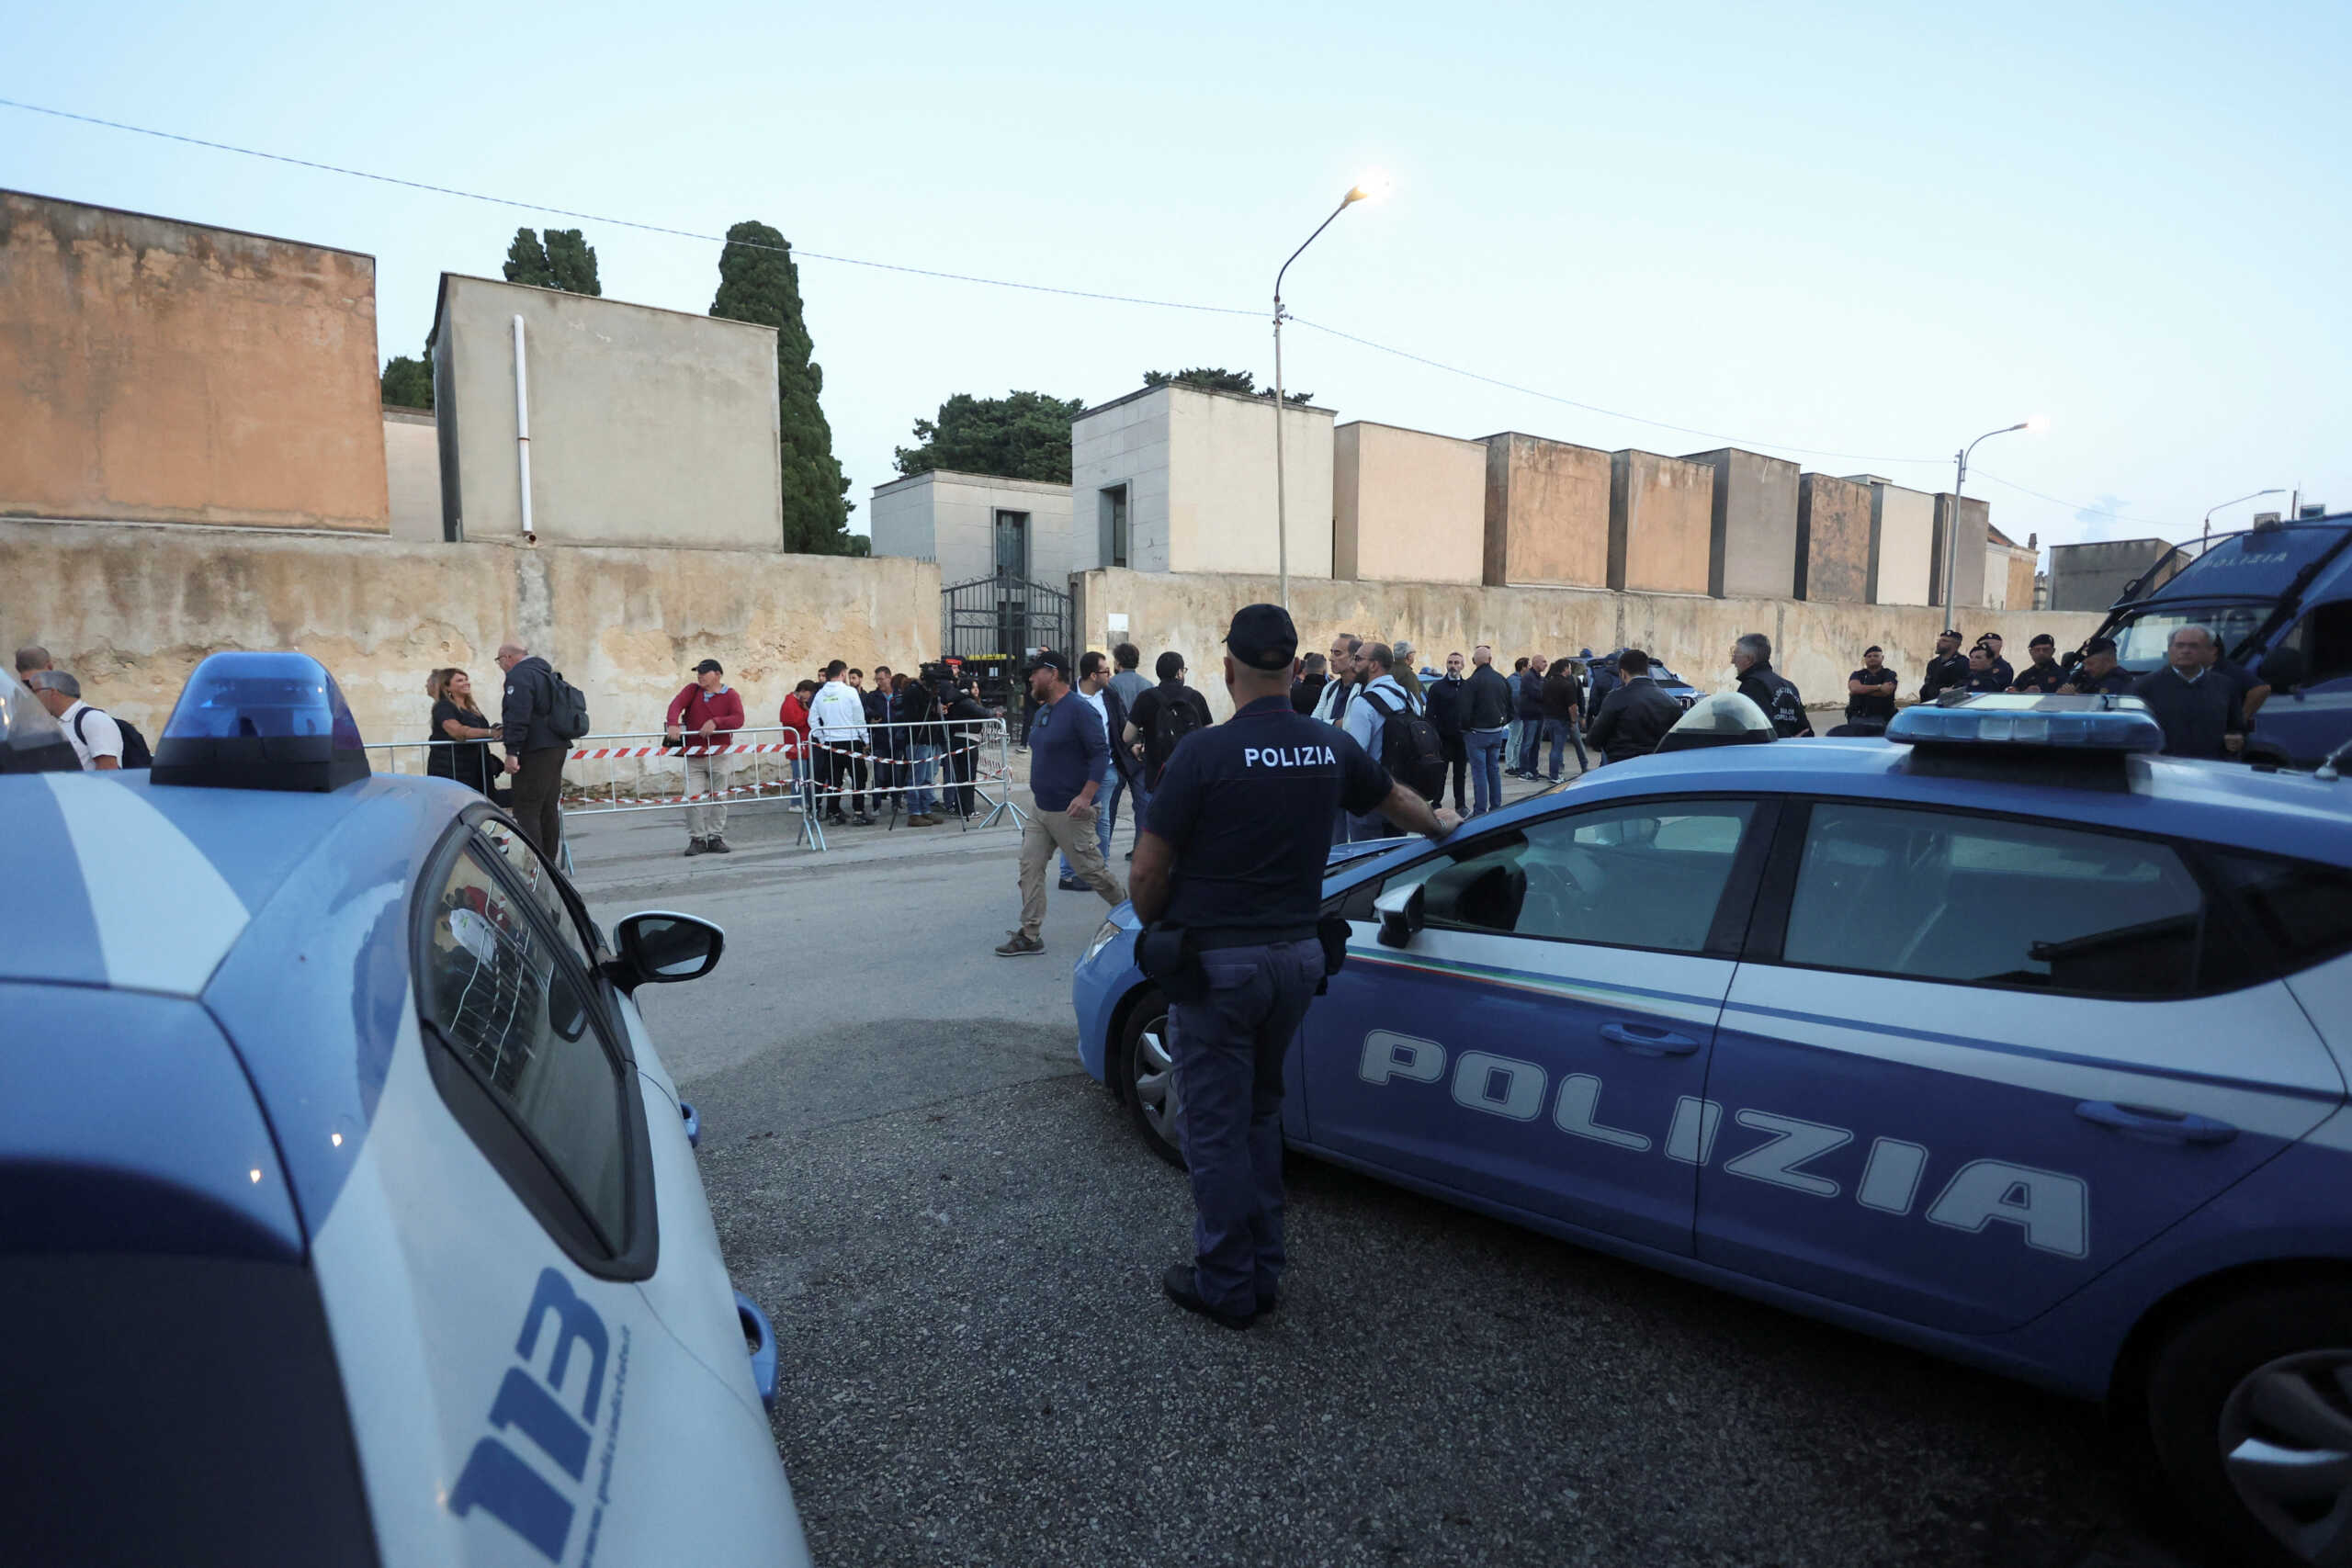 Ιταλία: Προκάλεσε ανησυχία ξαφνική άσκηση εκκένωσης του εβραϊκού σχολείου της Ρώμης